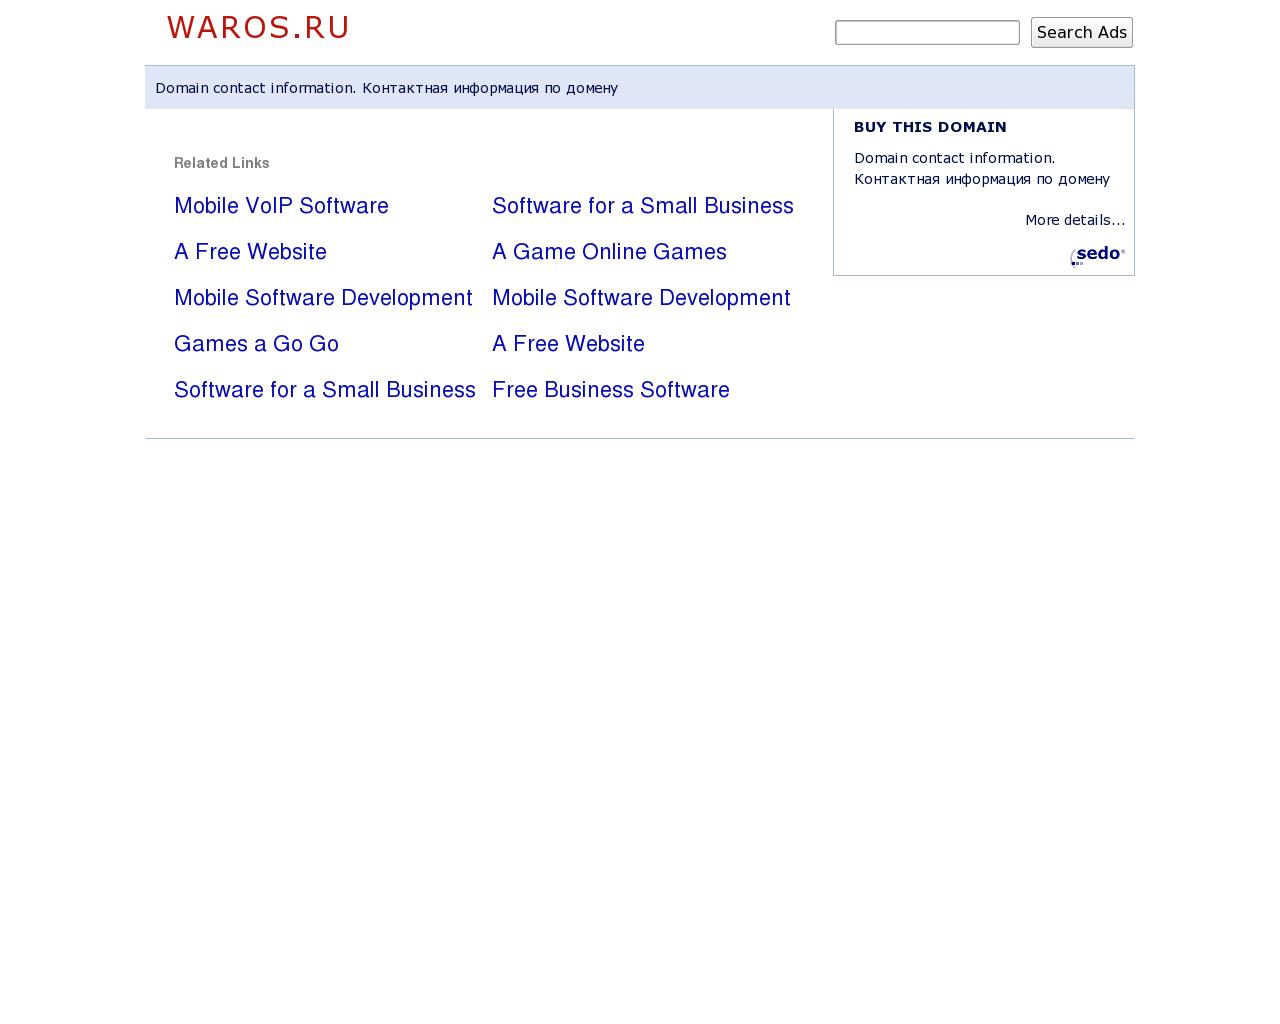 Изображение сайта waros.ru в разрешении 1280x1024